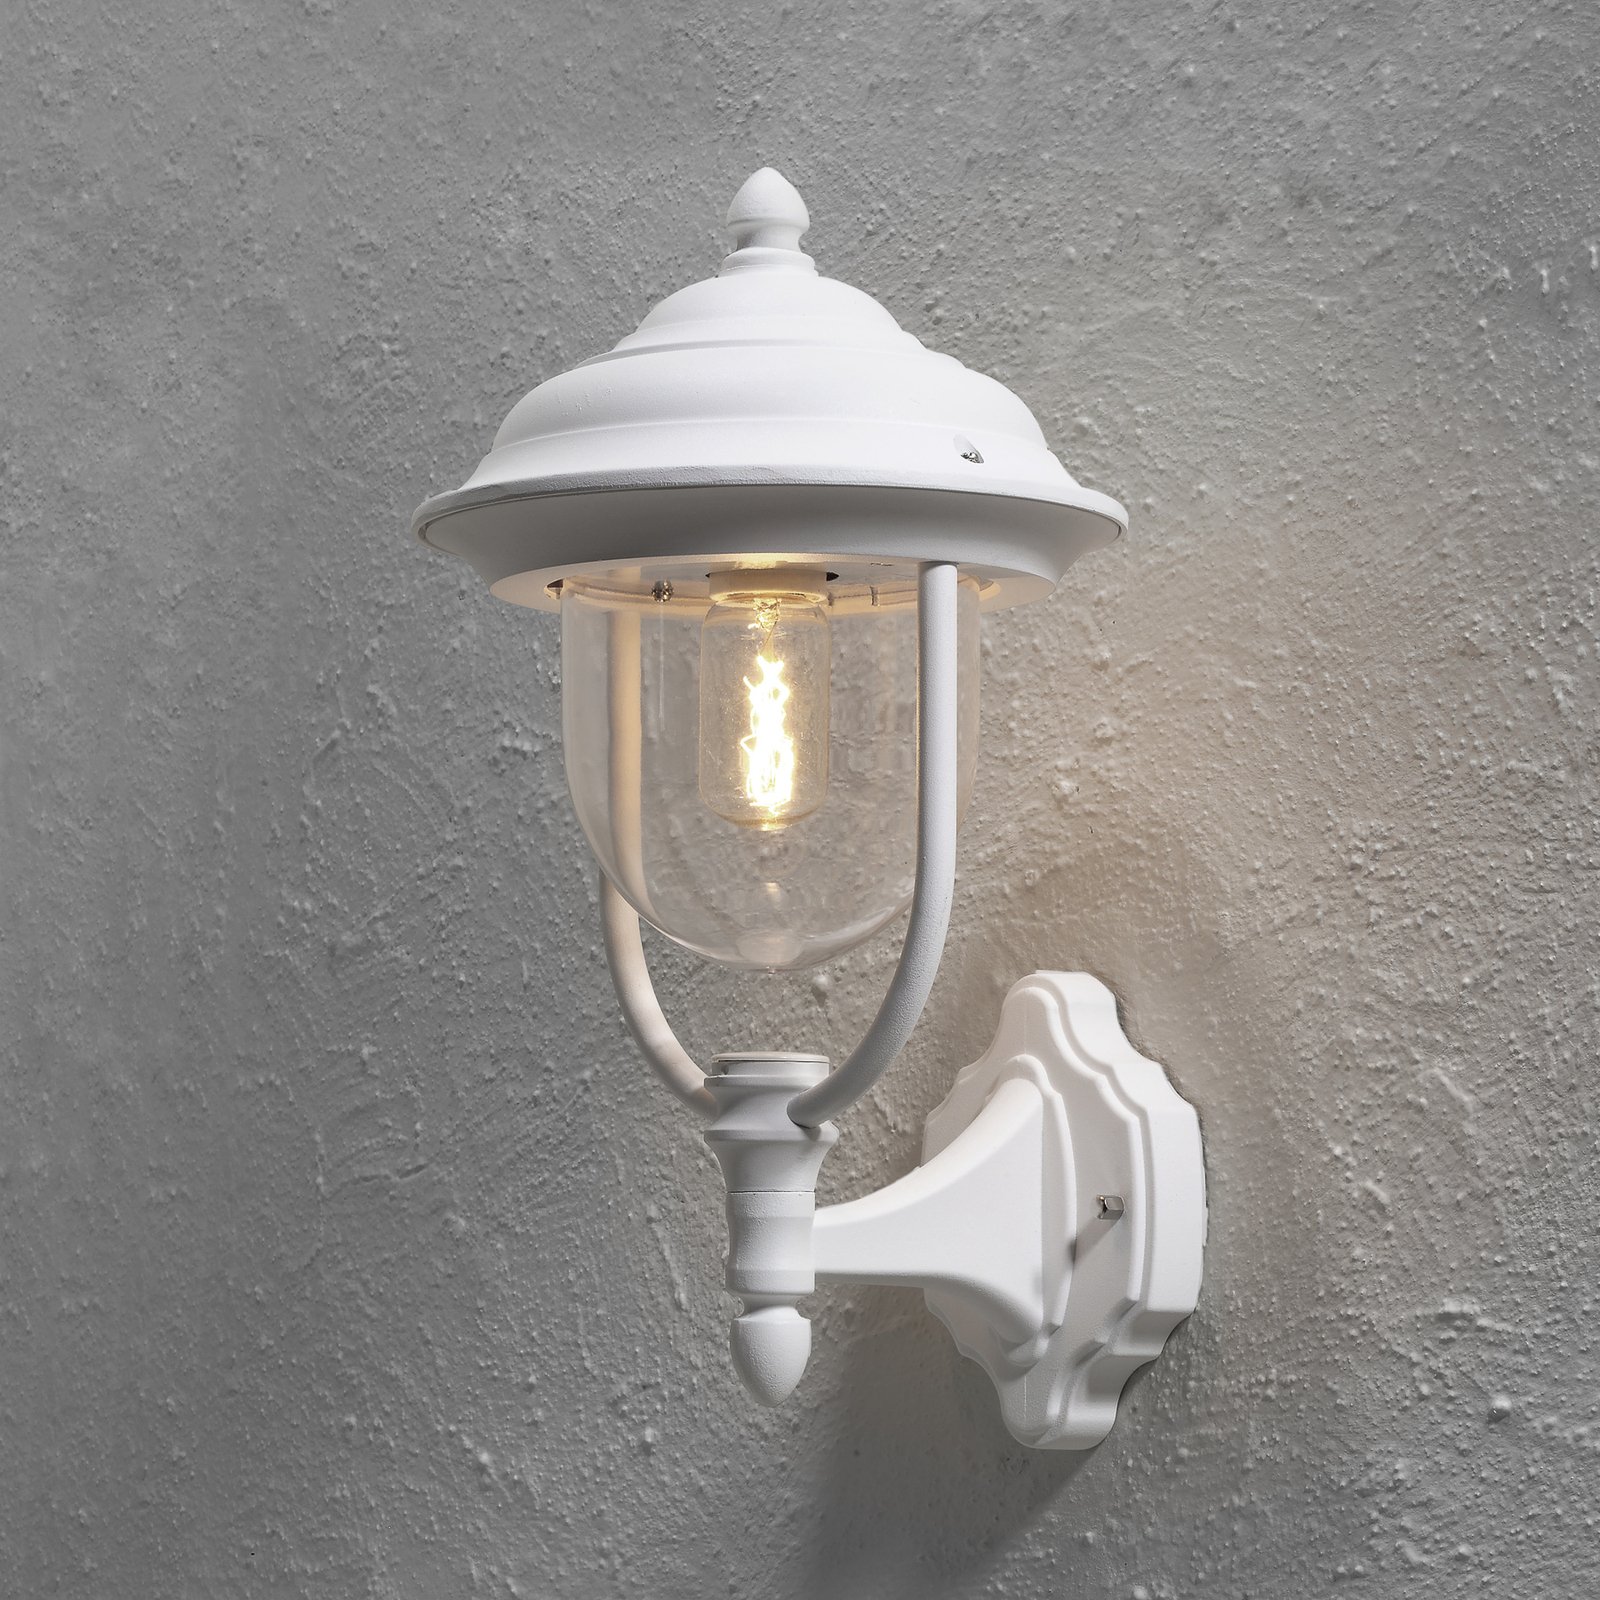 Udendørs væglampen "Parma" - opret, i hvid